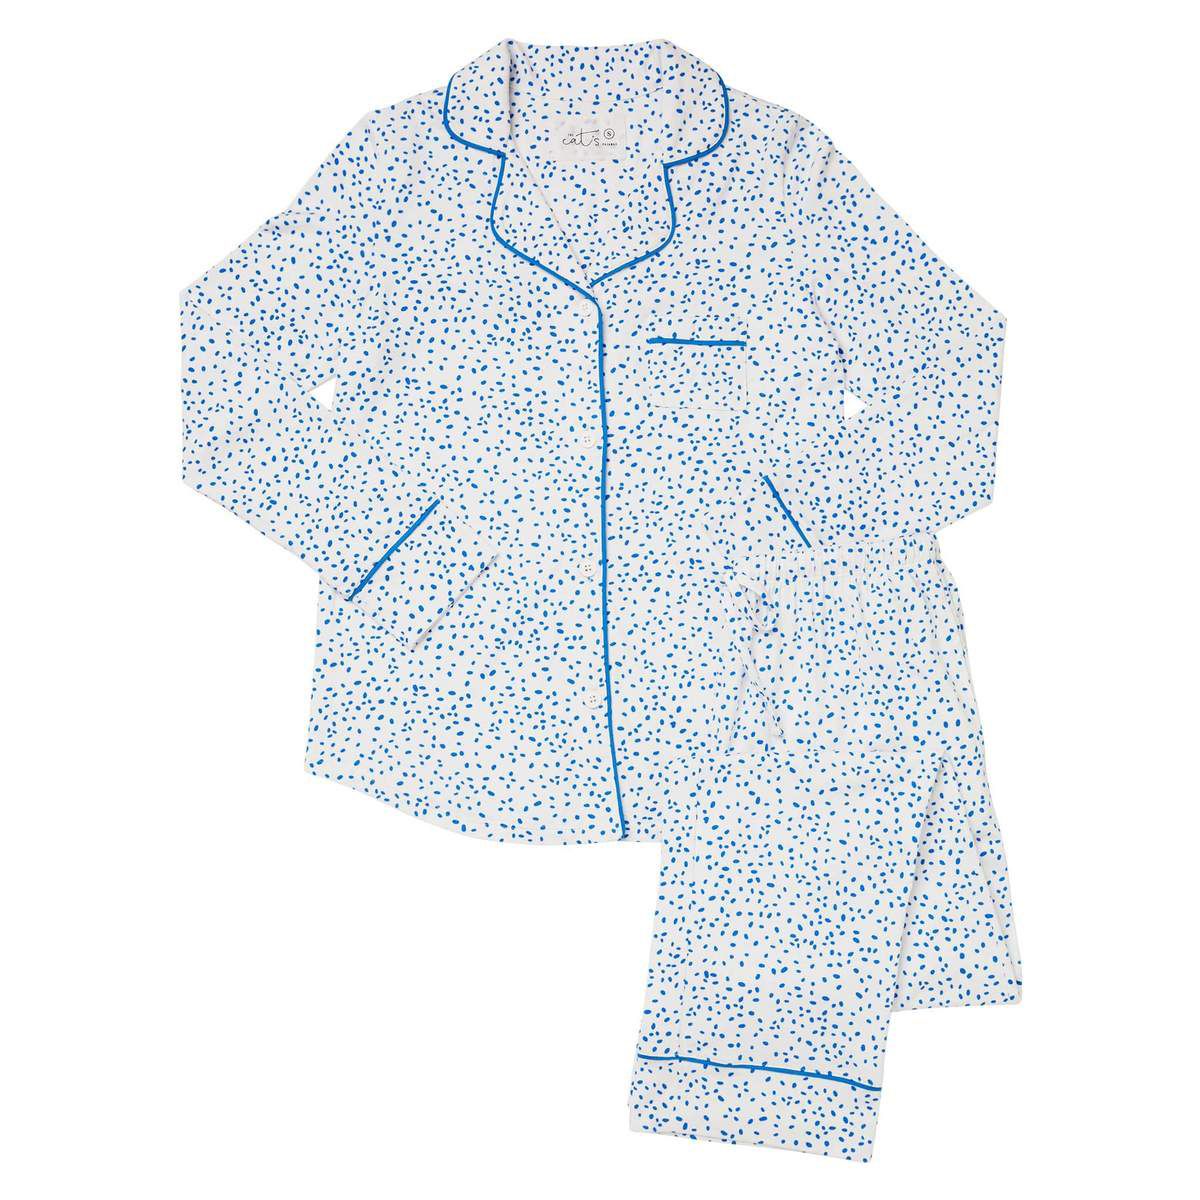 Bedste gaver til bedstemor - The Cat's Pyjamas Confetti Dot Pima Knit Pyjamas Set